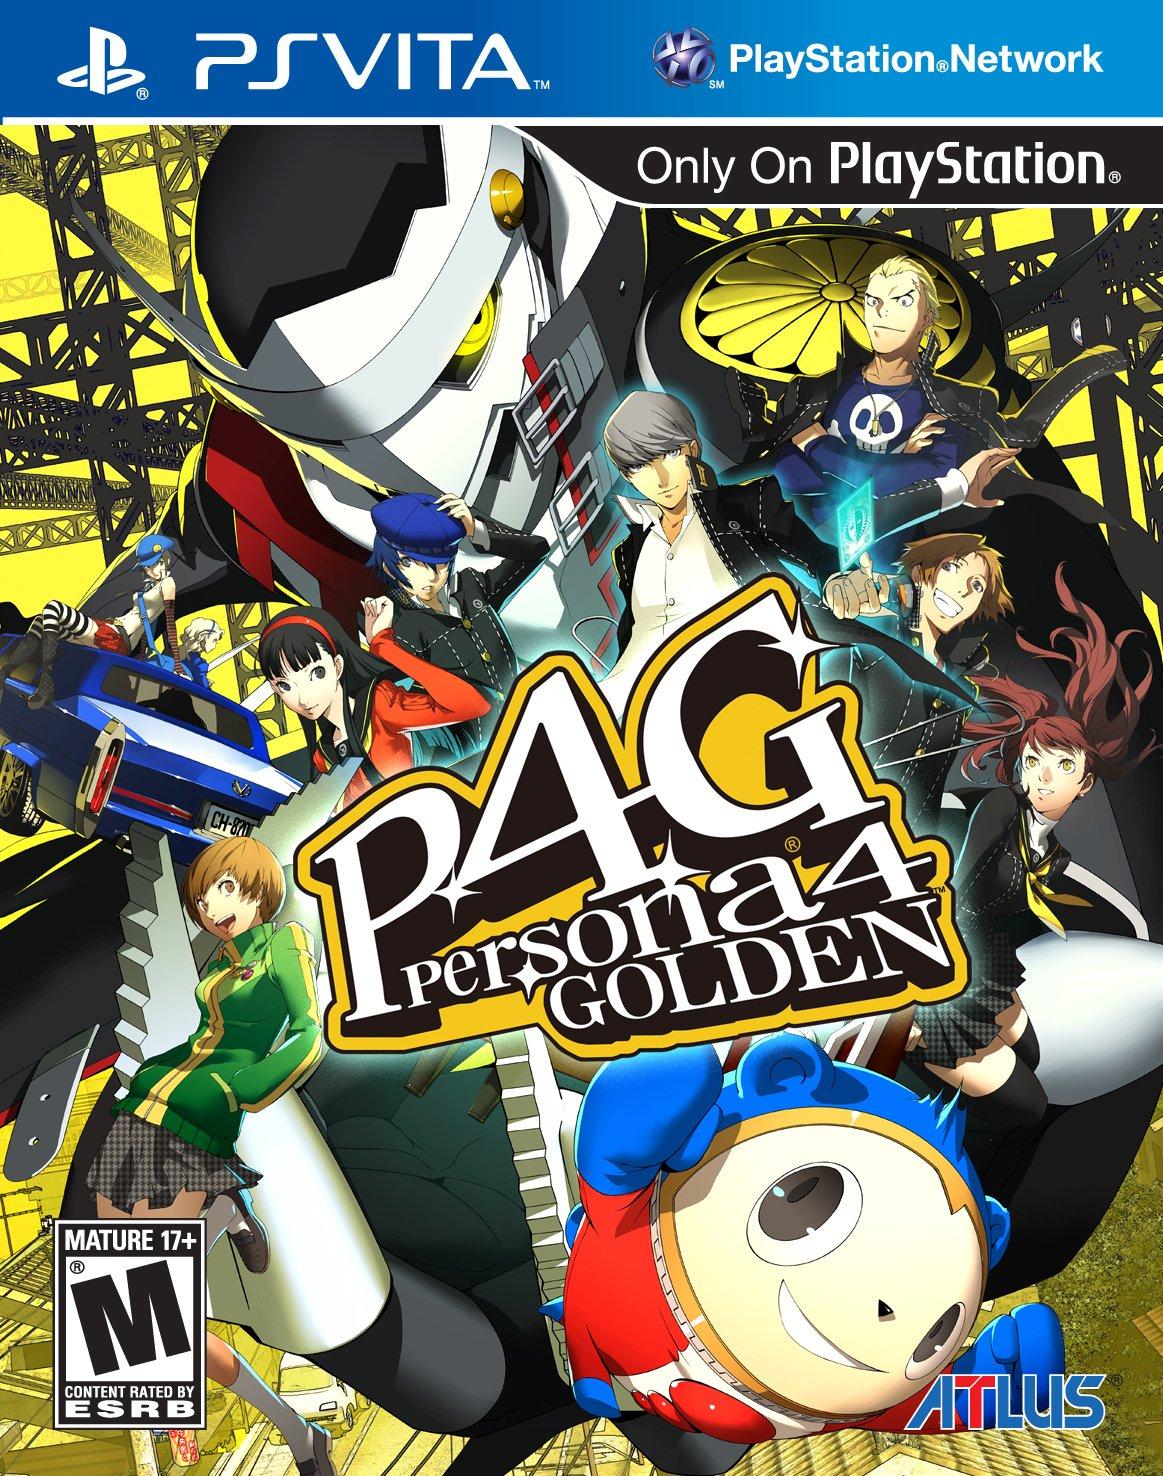 Persona 4 Golden - PS Vita, Pre-Owned